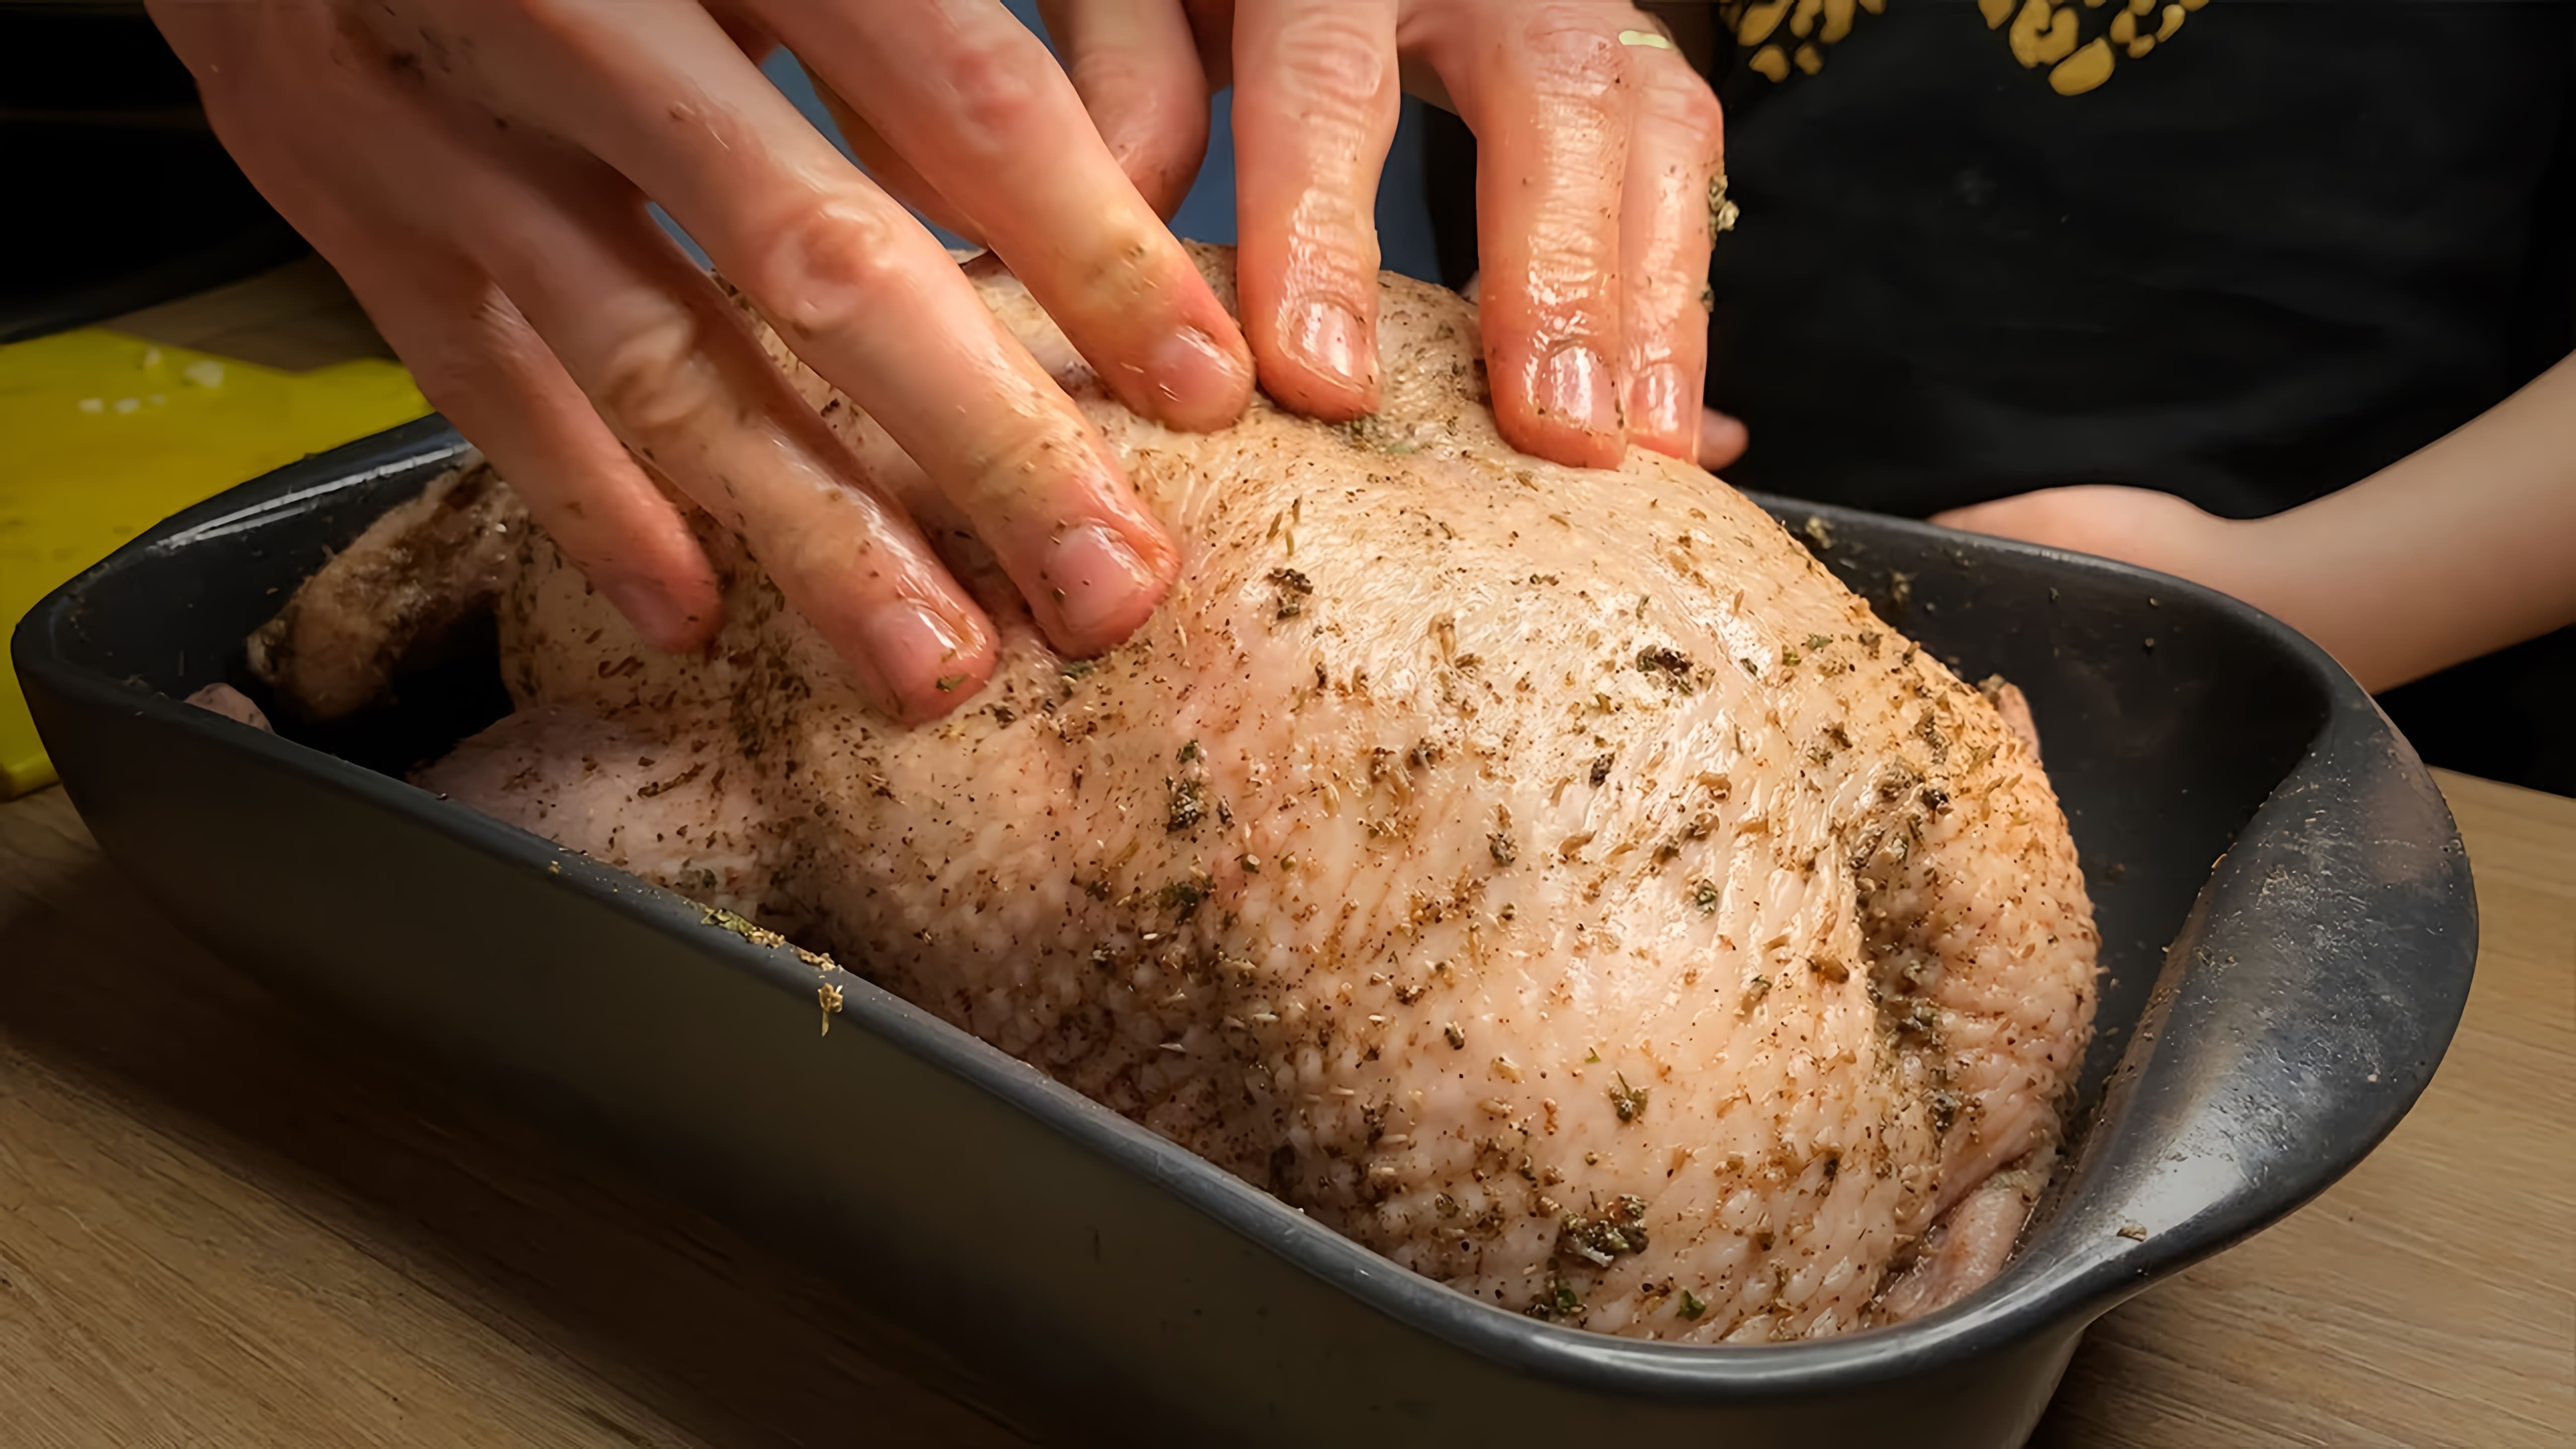 В этом видео демонстрируется процесс приготовления утки в духовке без предварительного маринования